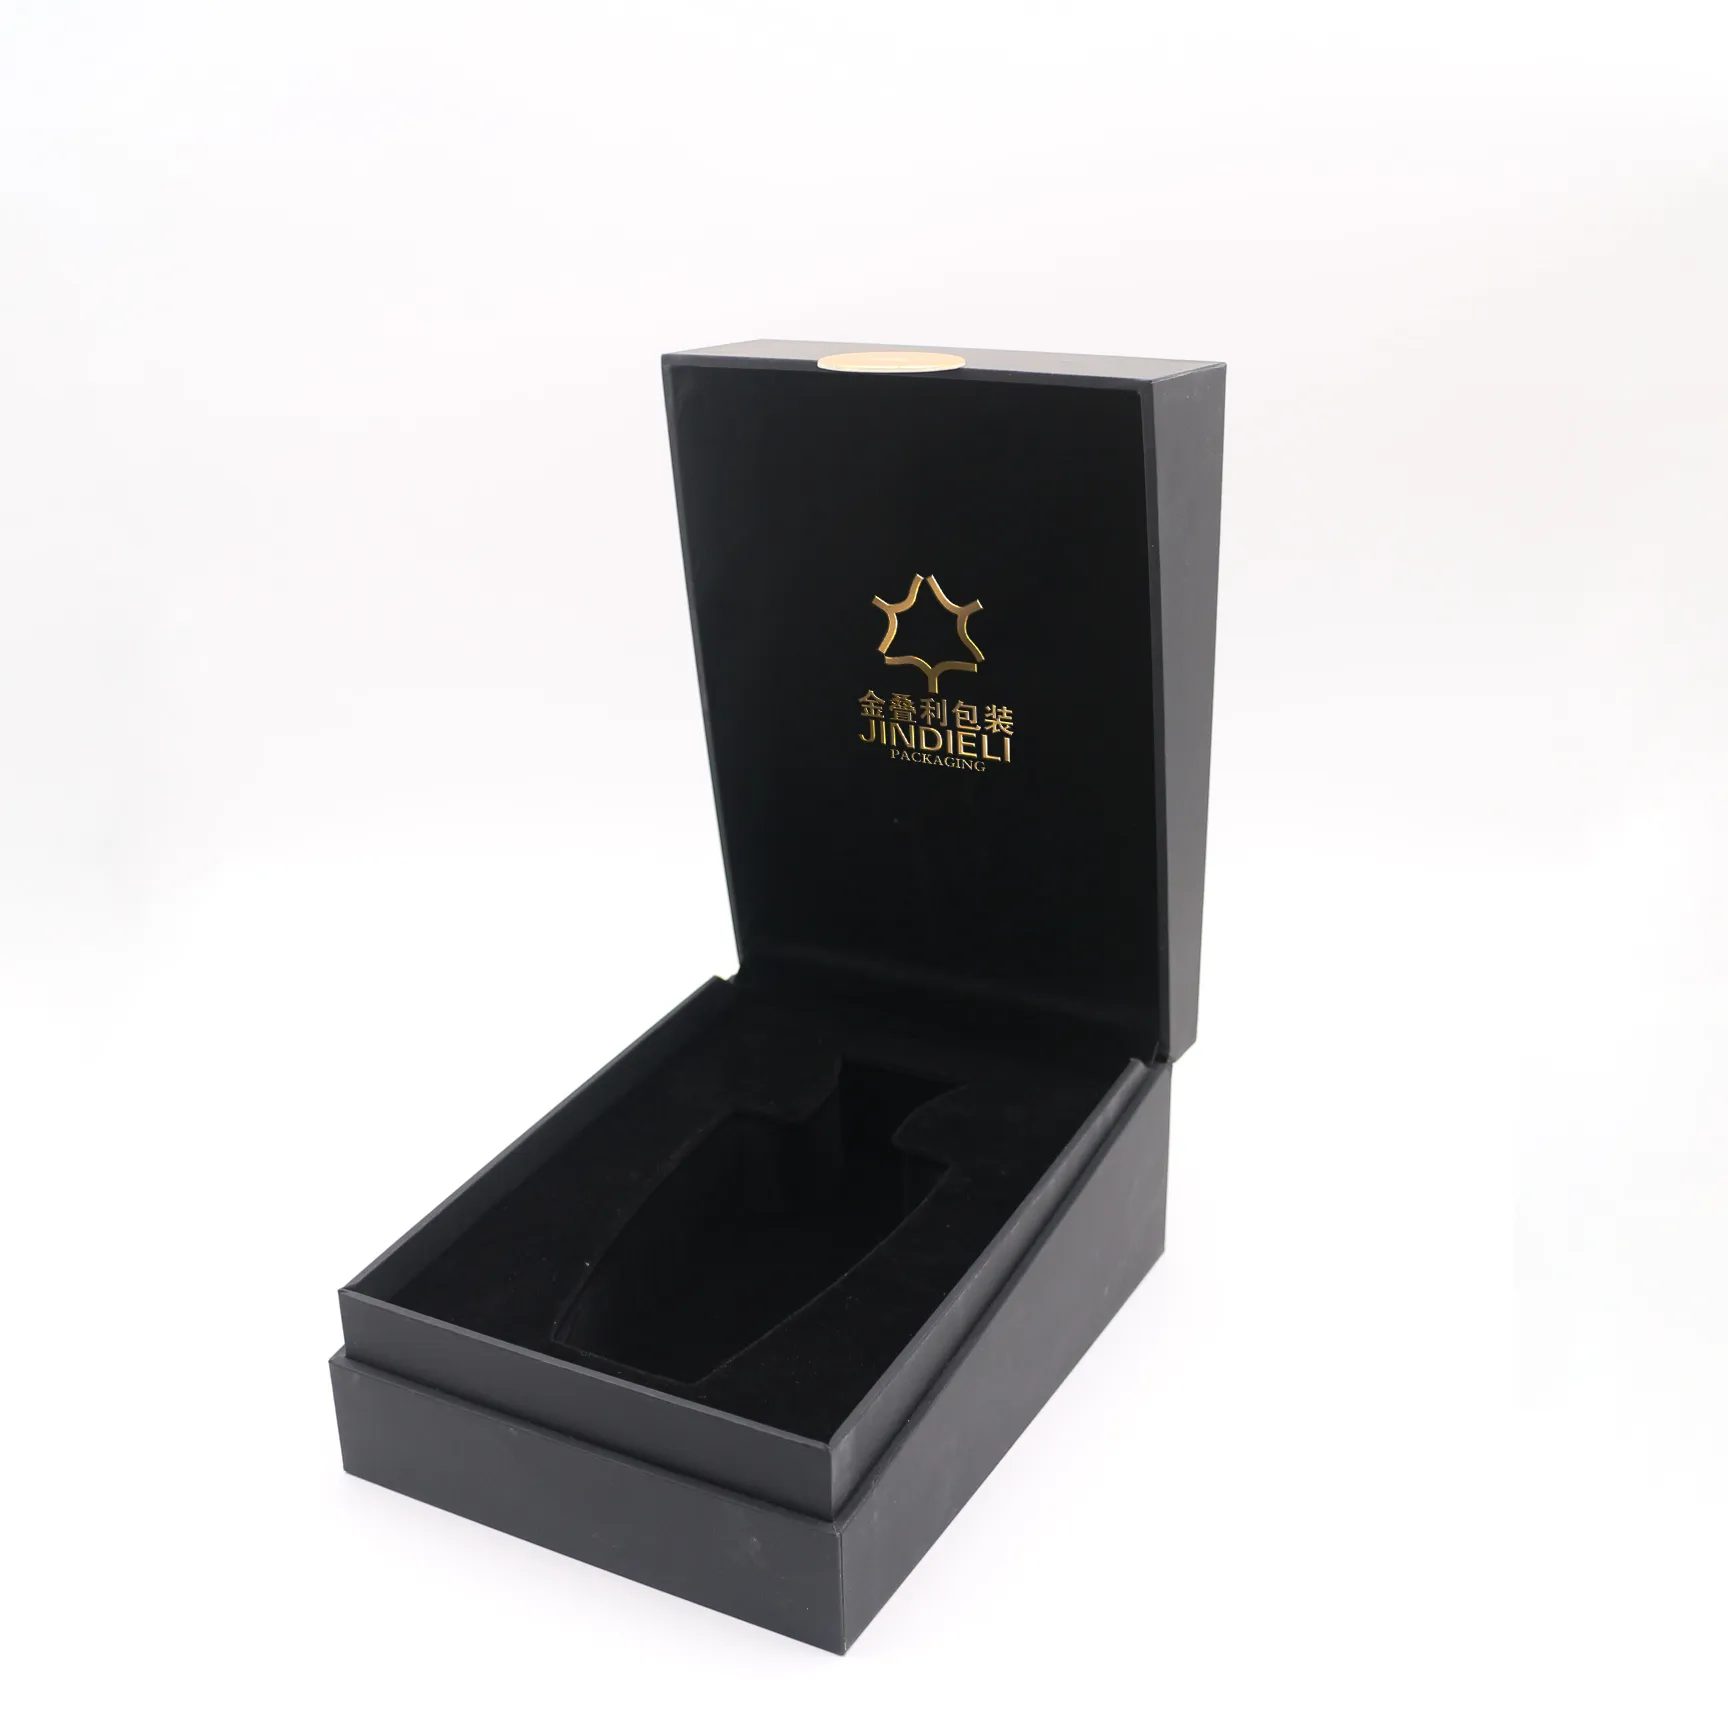 カスタムメタルネームプレートホットスタンプブラック香水ボックス包装高級エッセンシャルオイルギフトボックス香水ボックスデザインロゴ付き